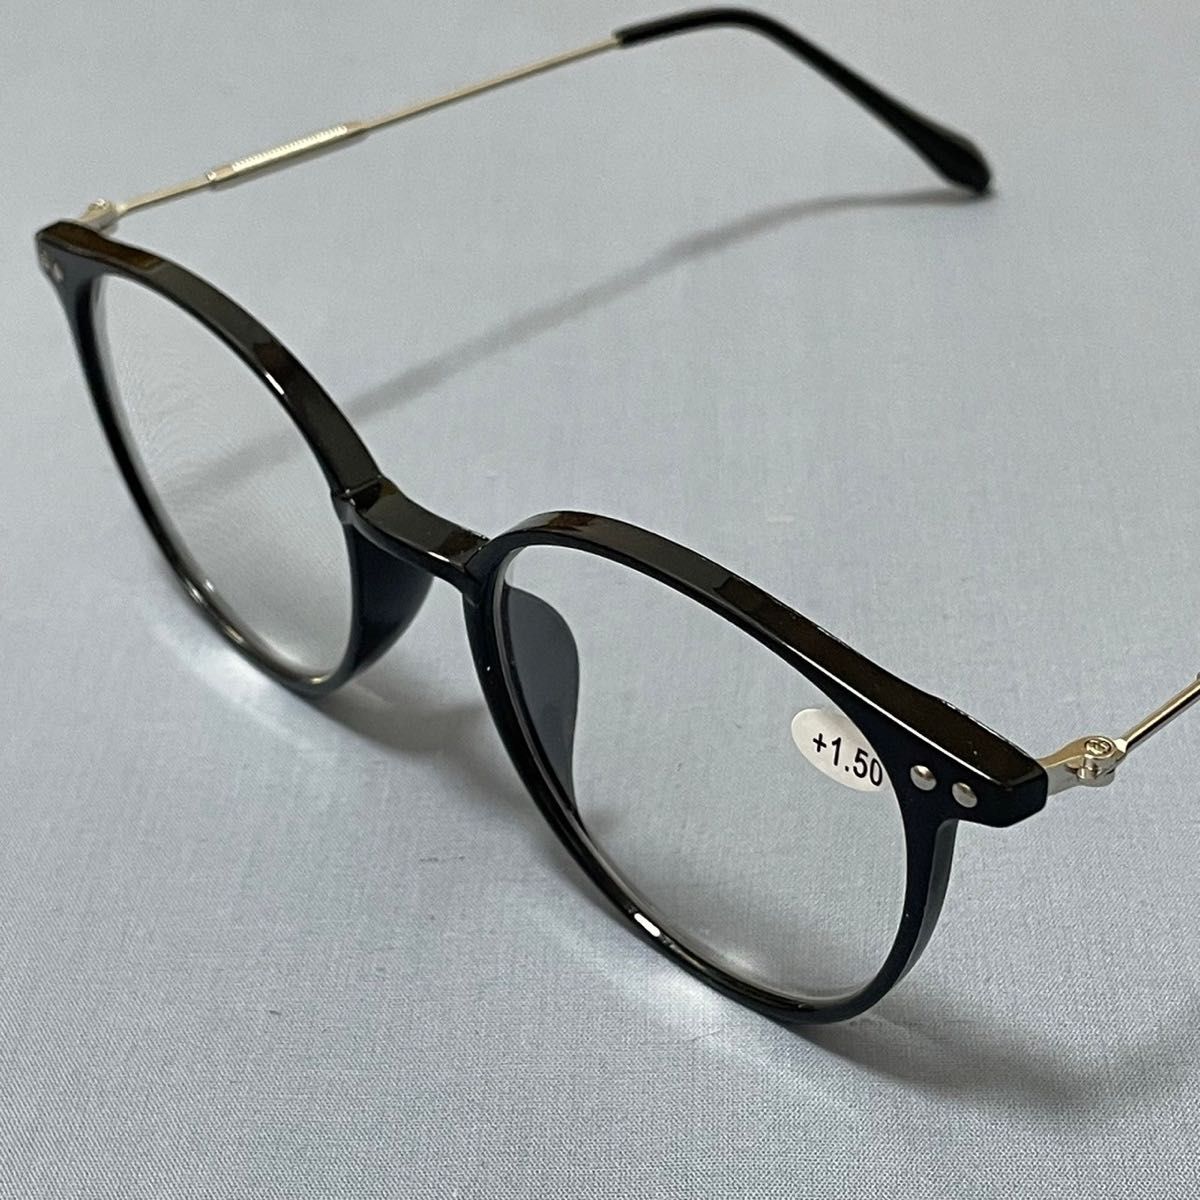 おしゃれ老眼鏡 シニアレンズ -1.5 ブラック ブルーライトカット UVカット